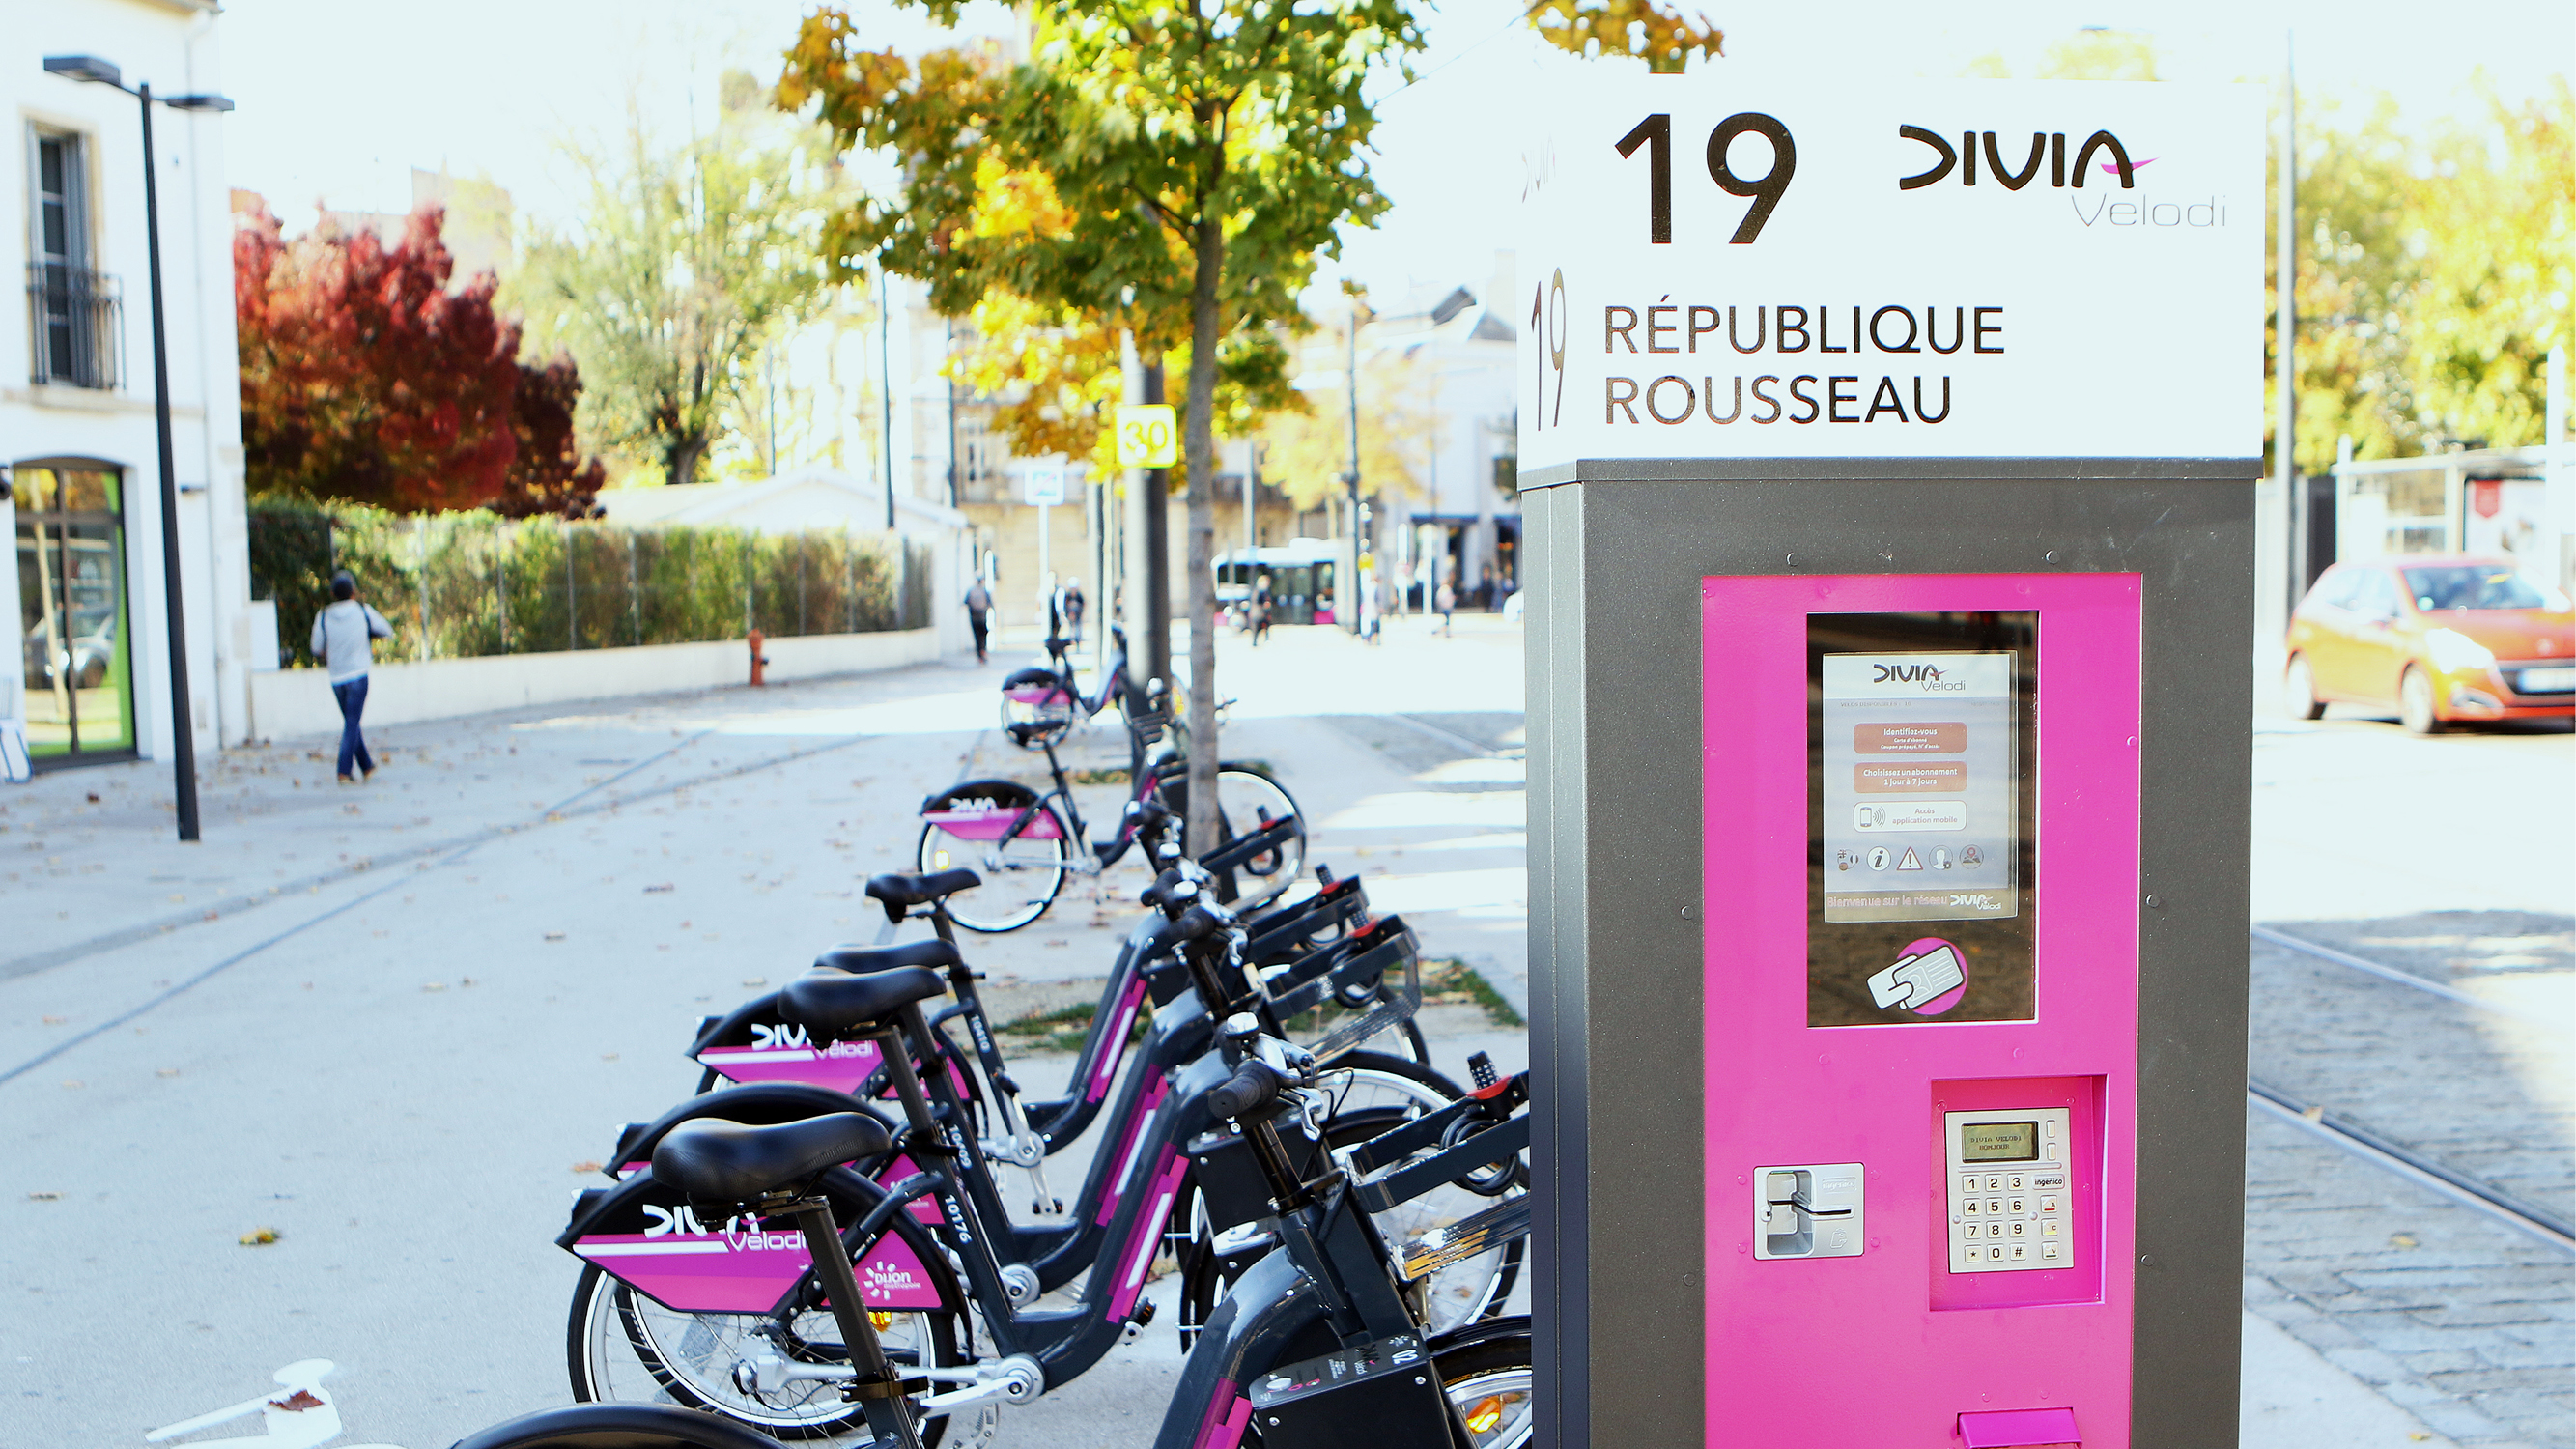 Divia vélodi le vélo en libre service à Dijon